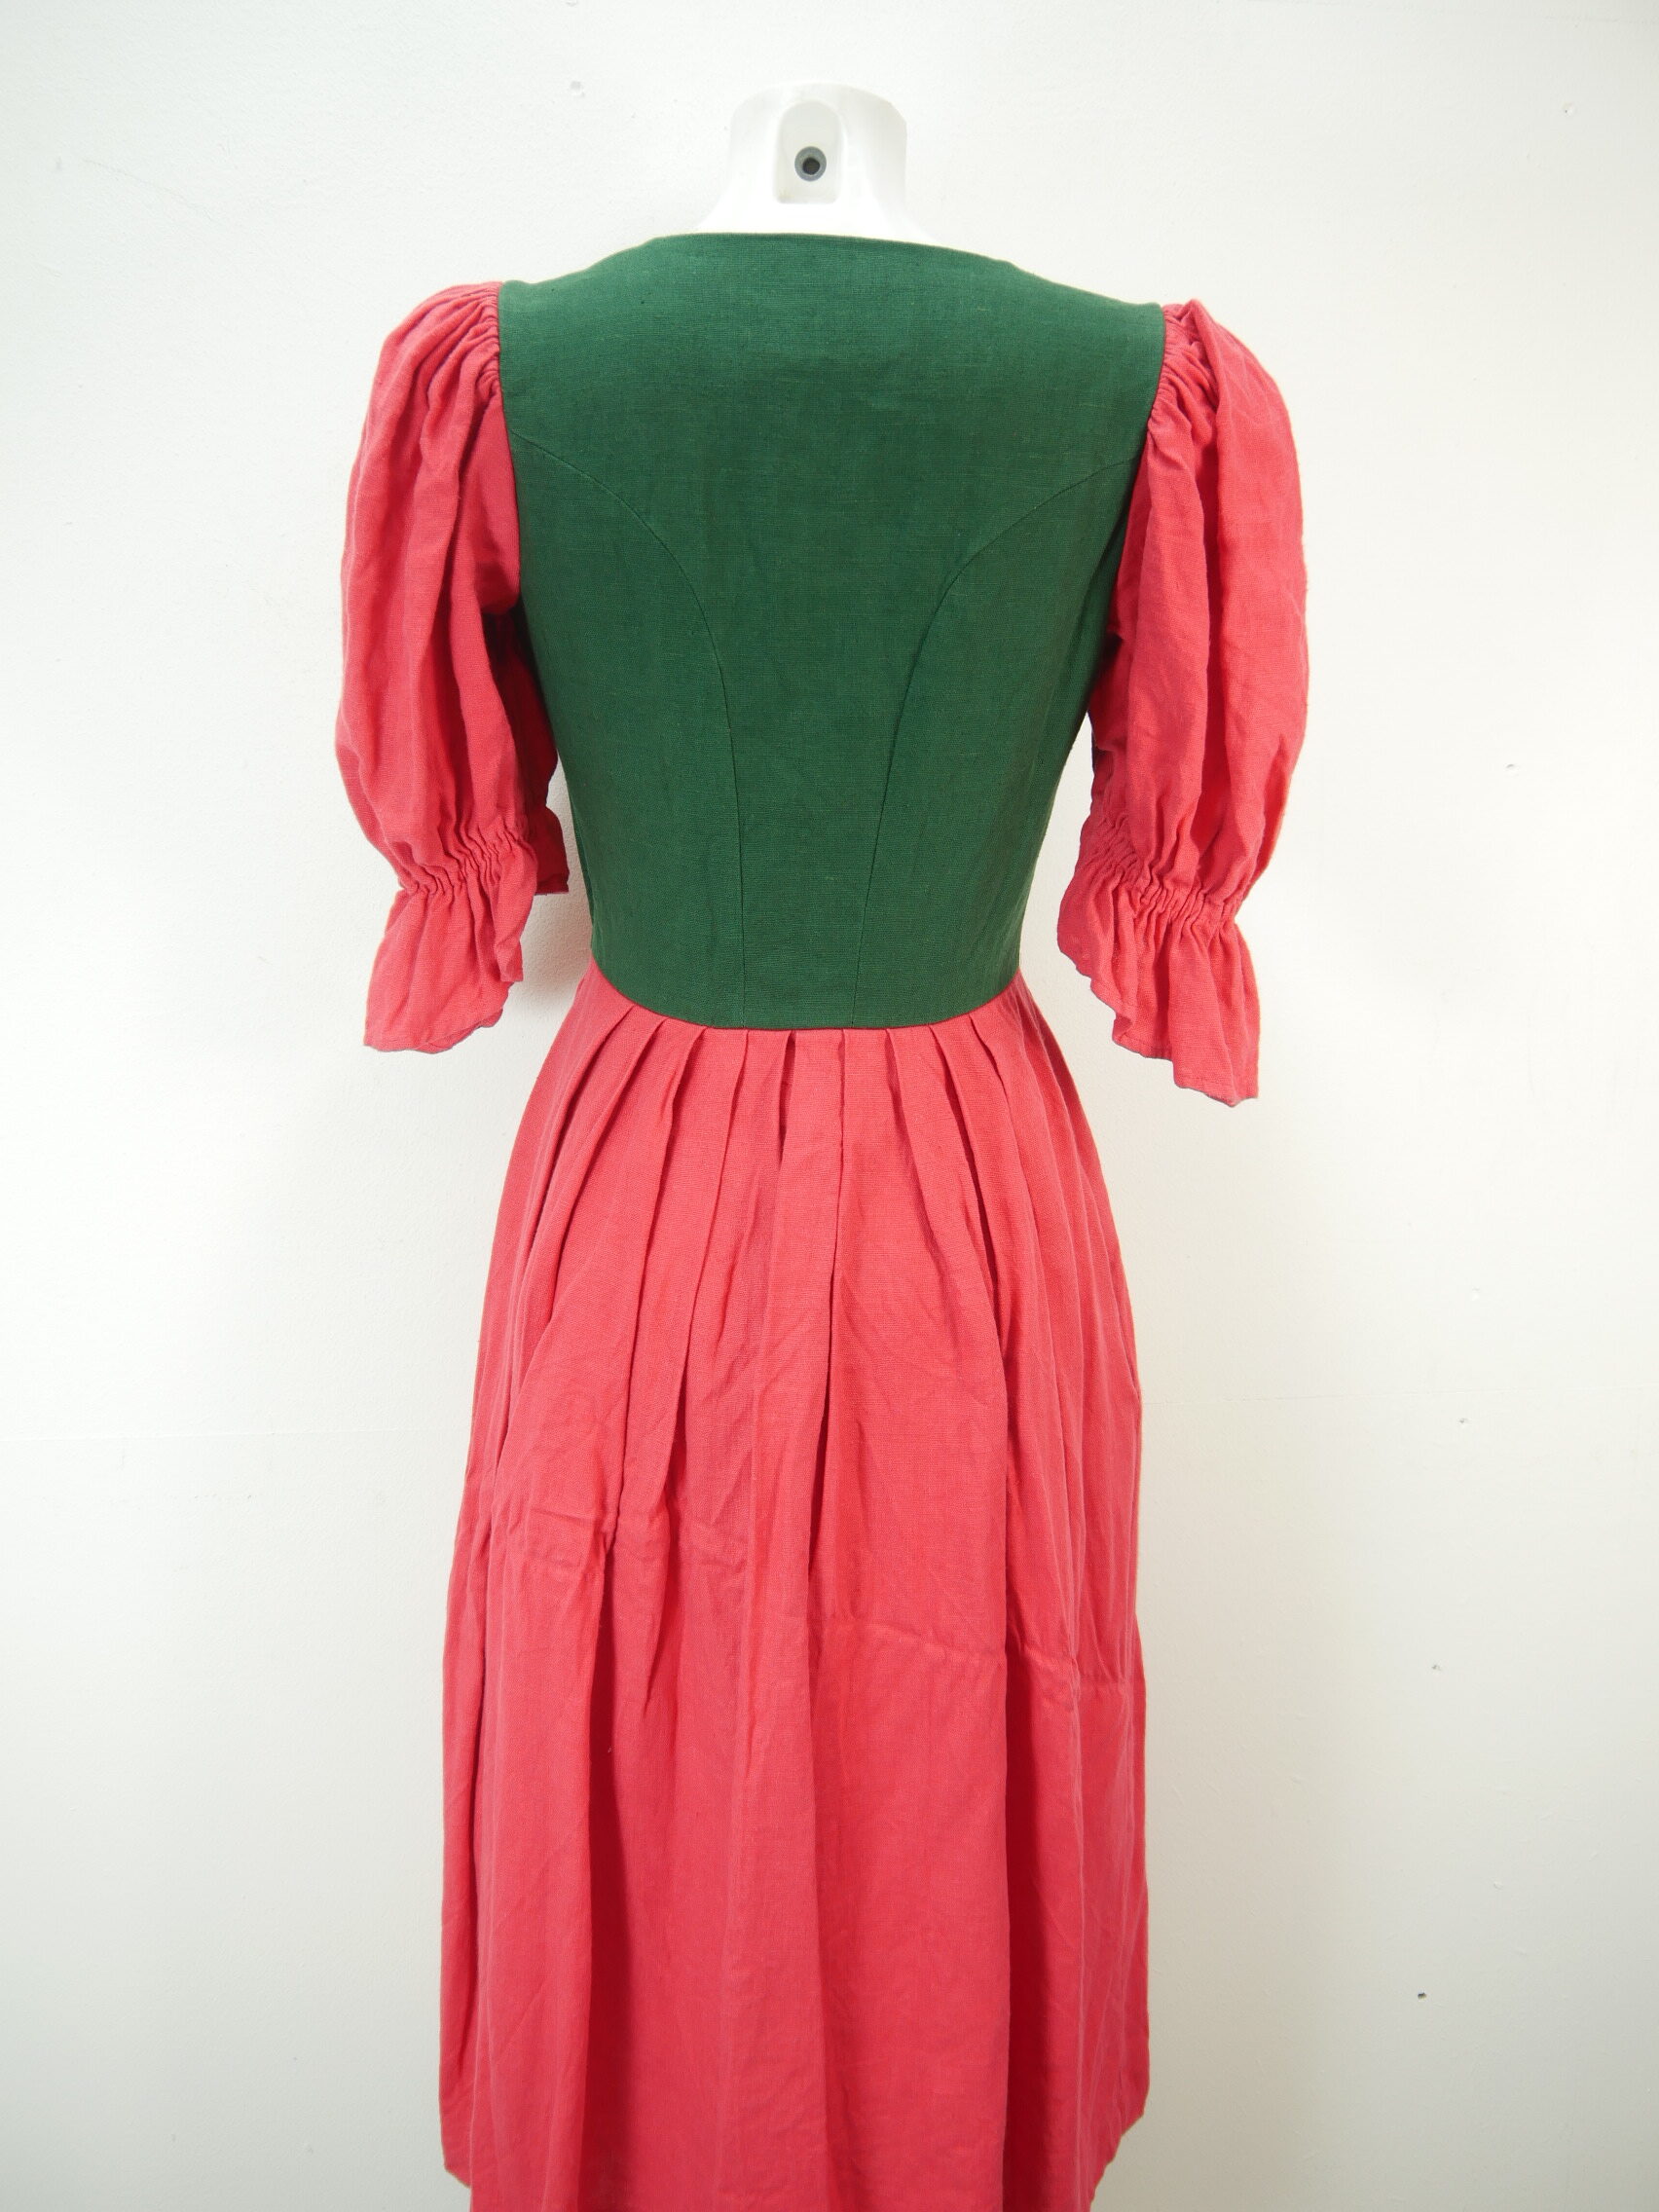 Sportalm Trachtenkleid phantastisches Kleid Kitzbühel rot grün Landhaus